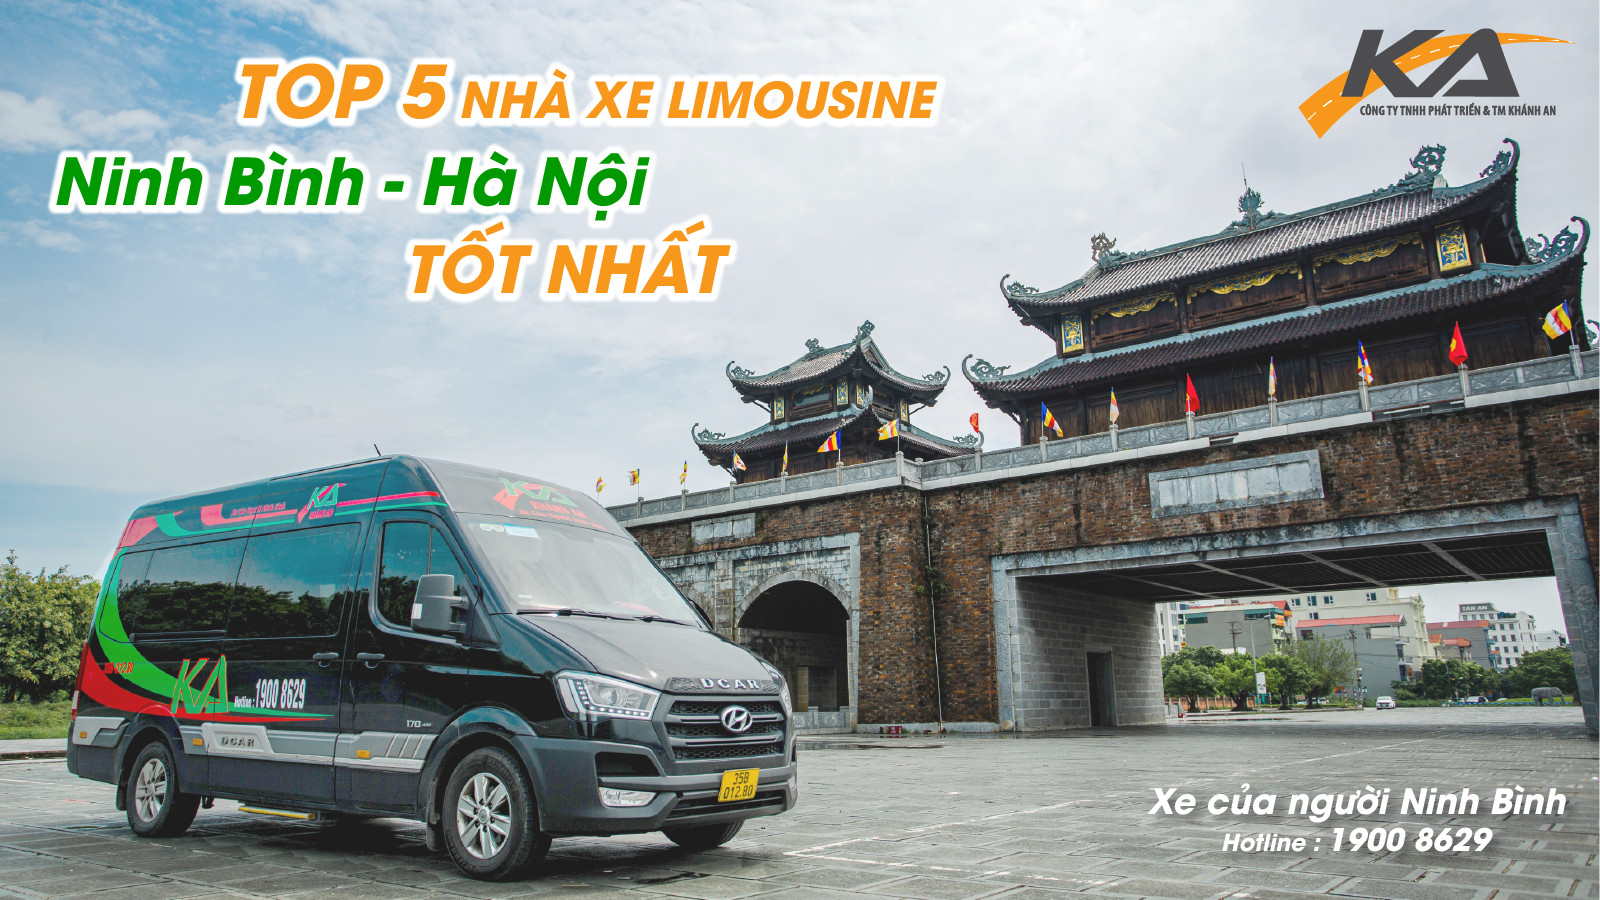 Khánh An Limousine: Top 5 nhà xe Limousine Ninh Bình – Hà Nội tốt nhất